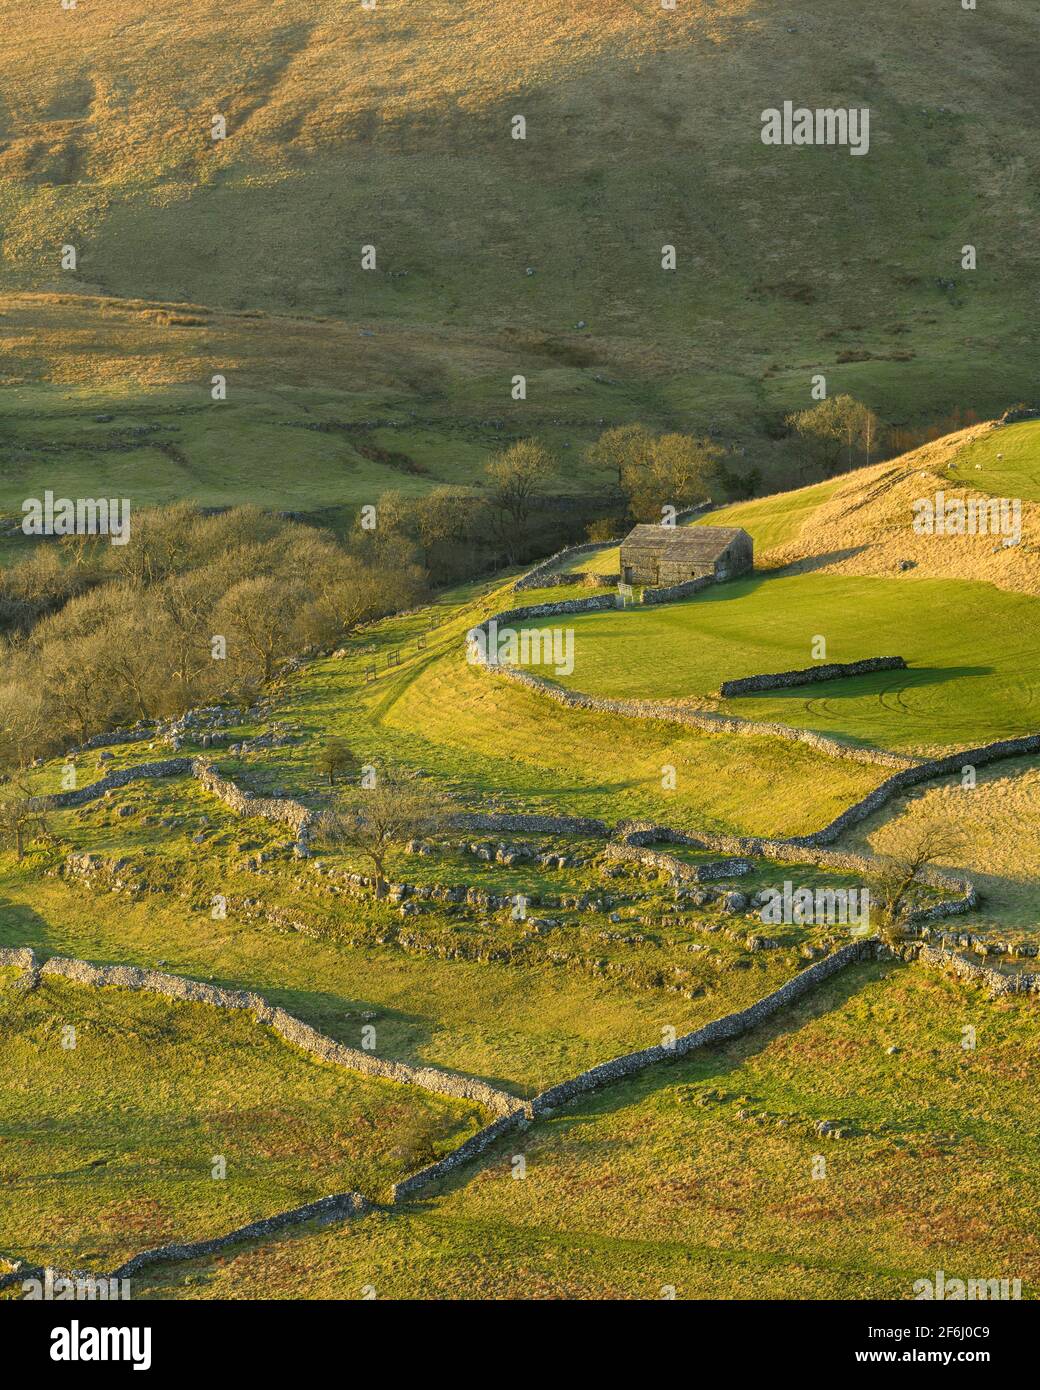 Paisaje escénico soleado Wharfedale (colinas altas, granero de piedra, laderas empinadas de la ladera, paredes de piedra caliza, pastos de pastoreo) - Yorkshire Dales, Inglaterra Reino Unido. Foto de stock